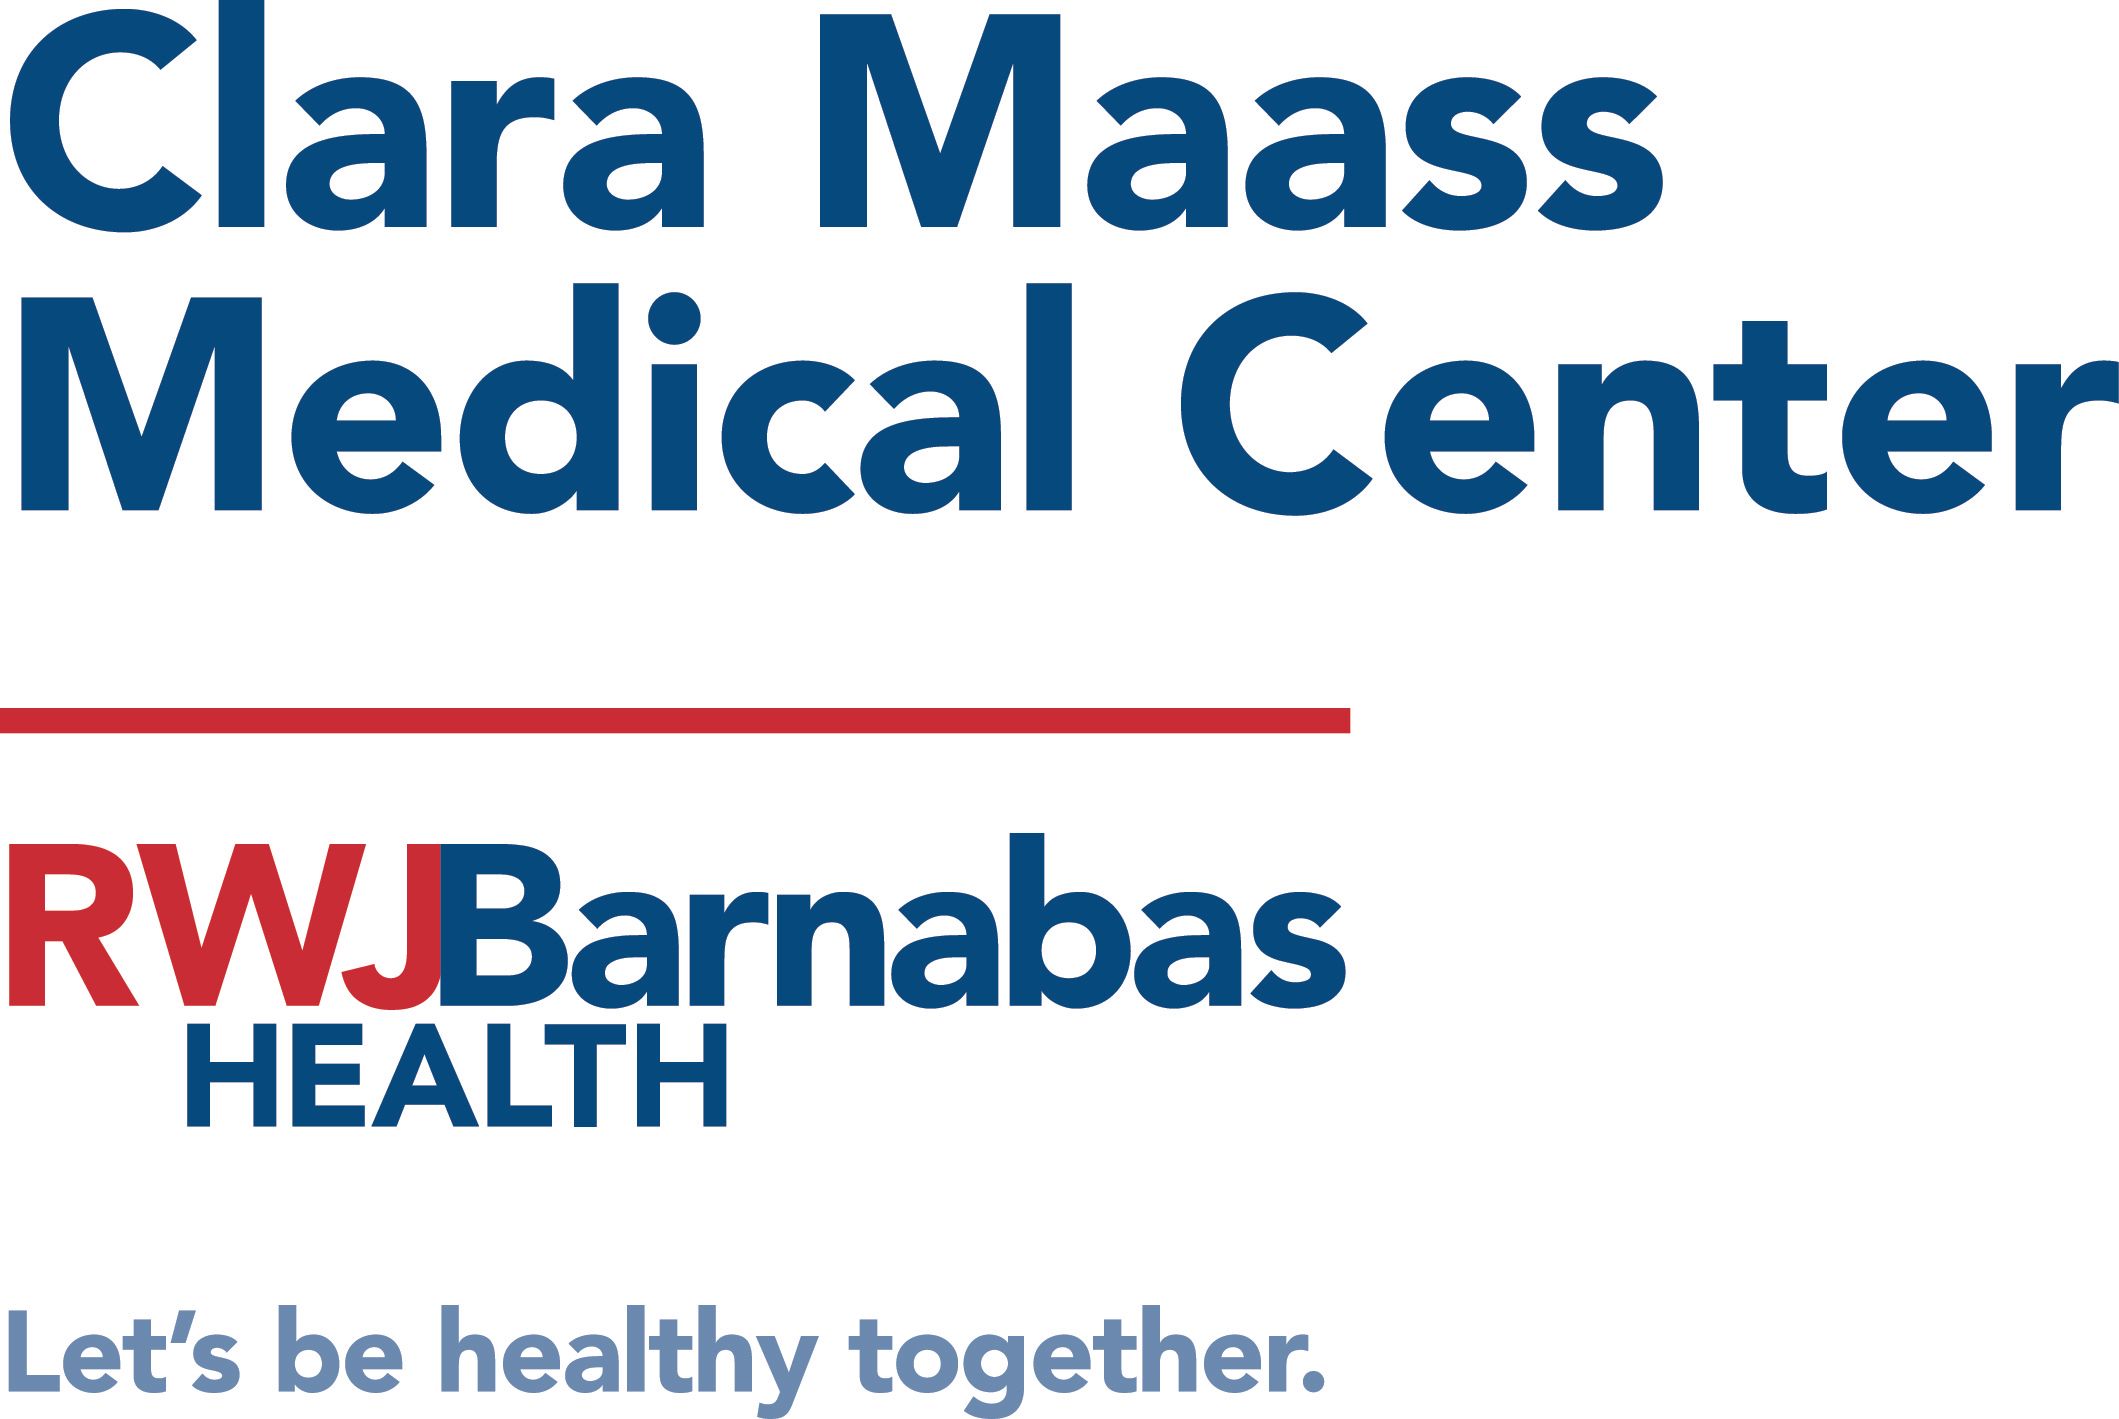 Clara Maas Medical Center